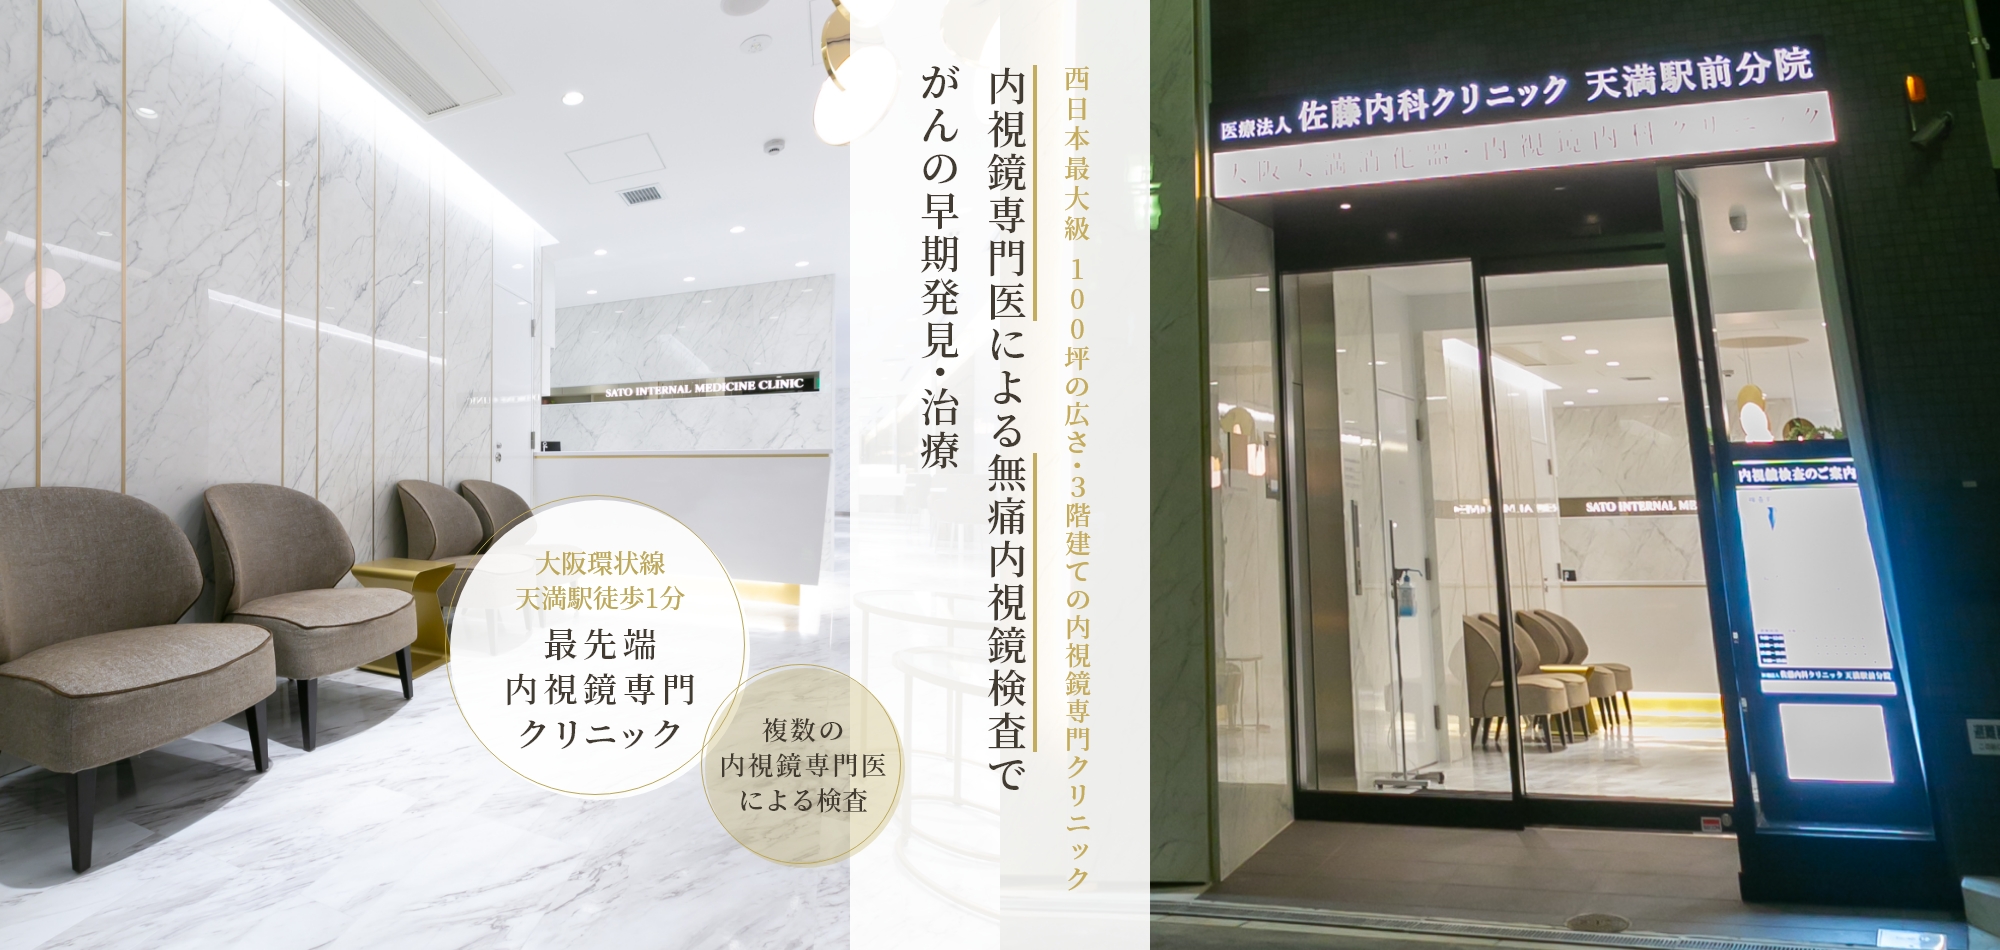 西日本最大級 100坪の広さ・3階建ての内視鏡専門クリニック 内視鏡専門医による無痛内視鏡検査でがんの早期発見・治療